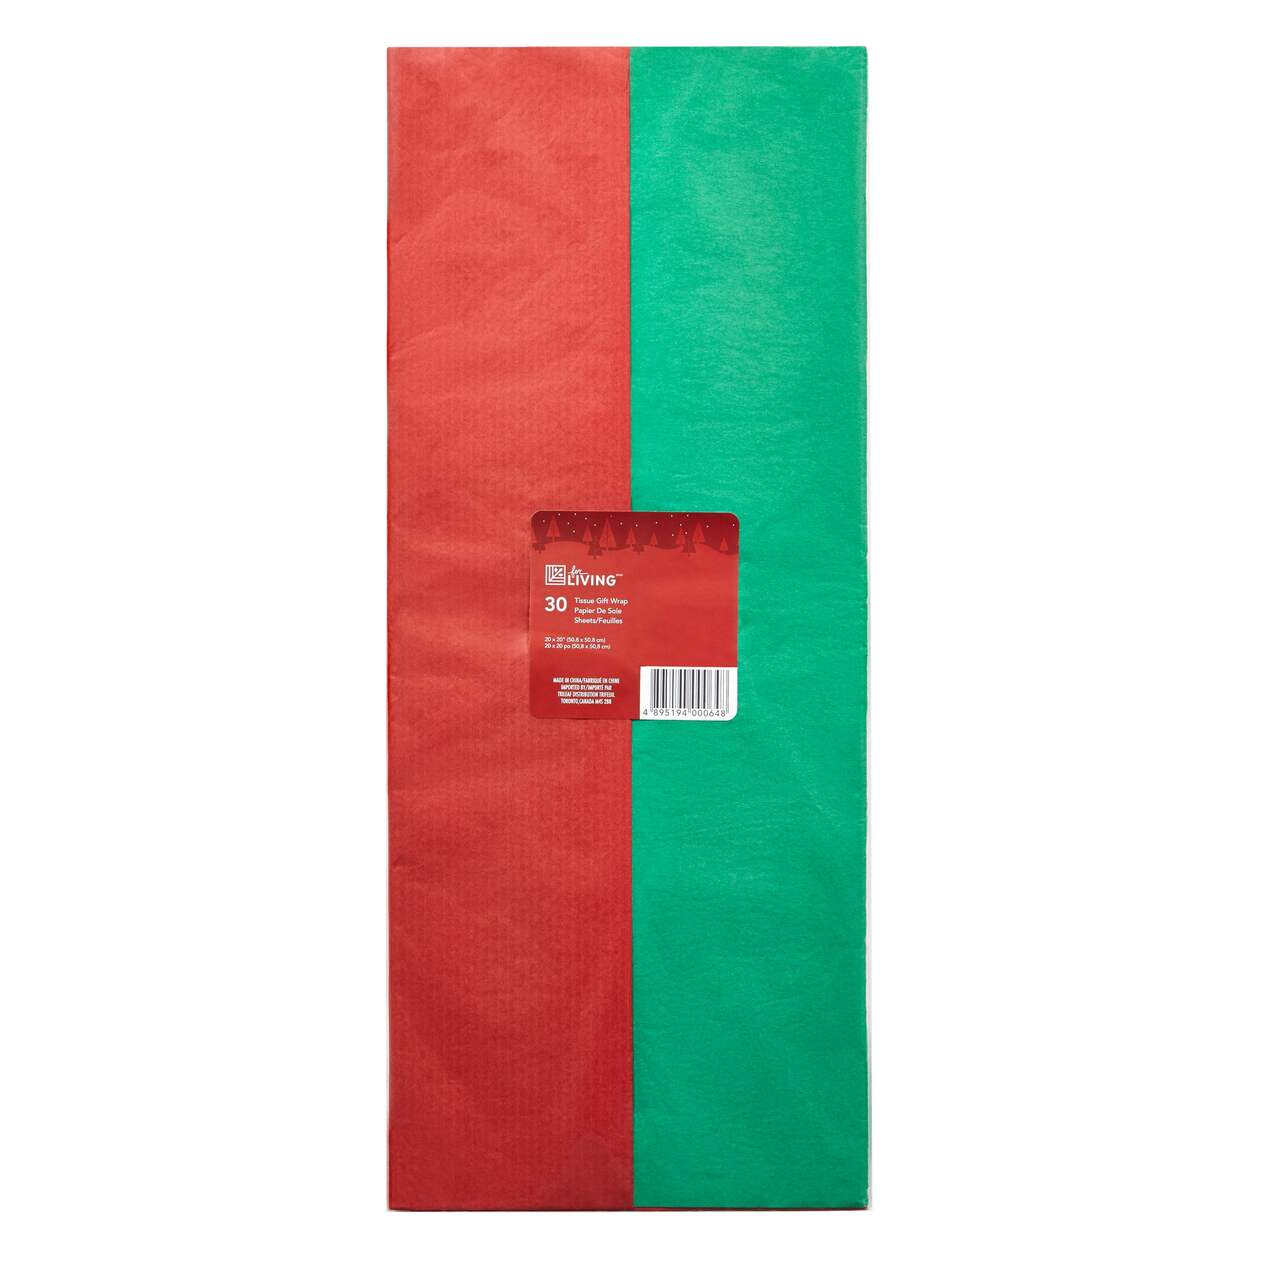 Décoration de Noël papier de soie For Living, rouge/vert/blanc, paq. 50